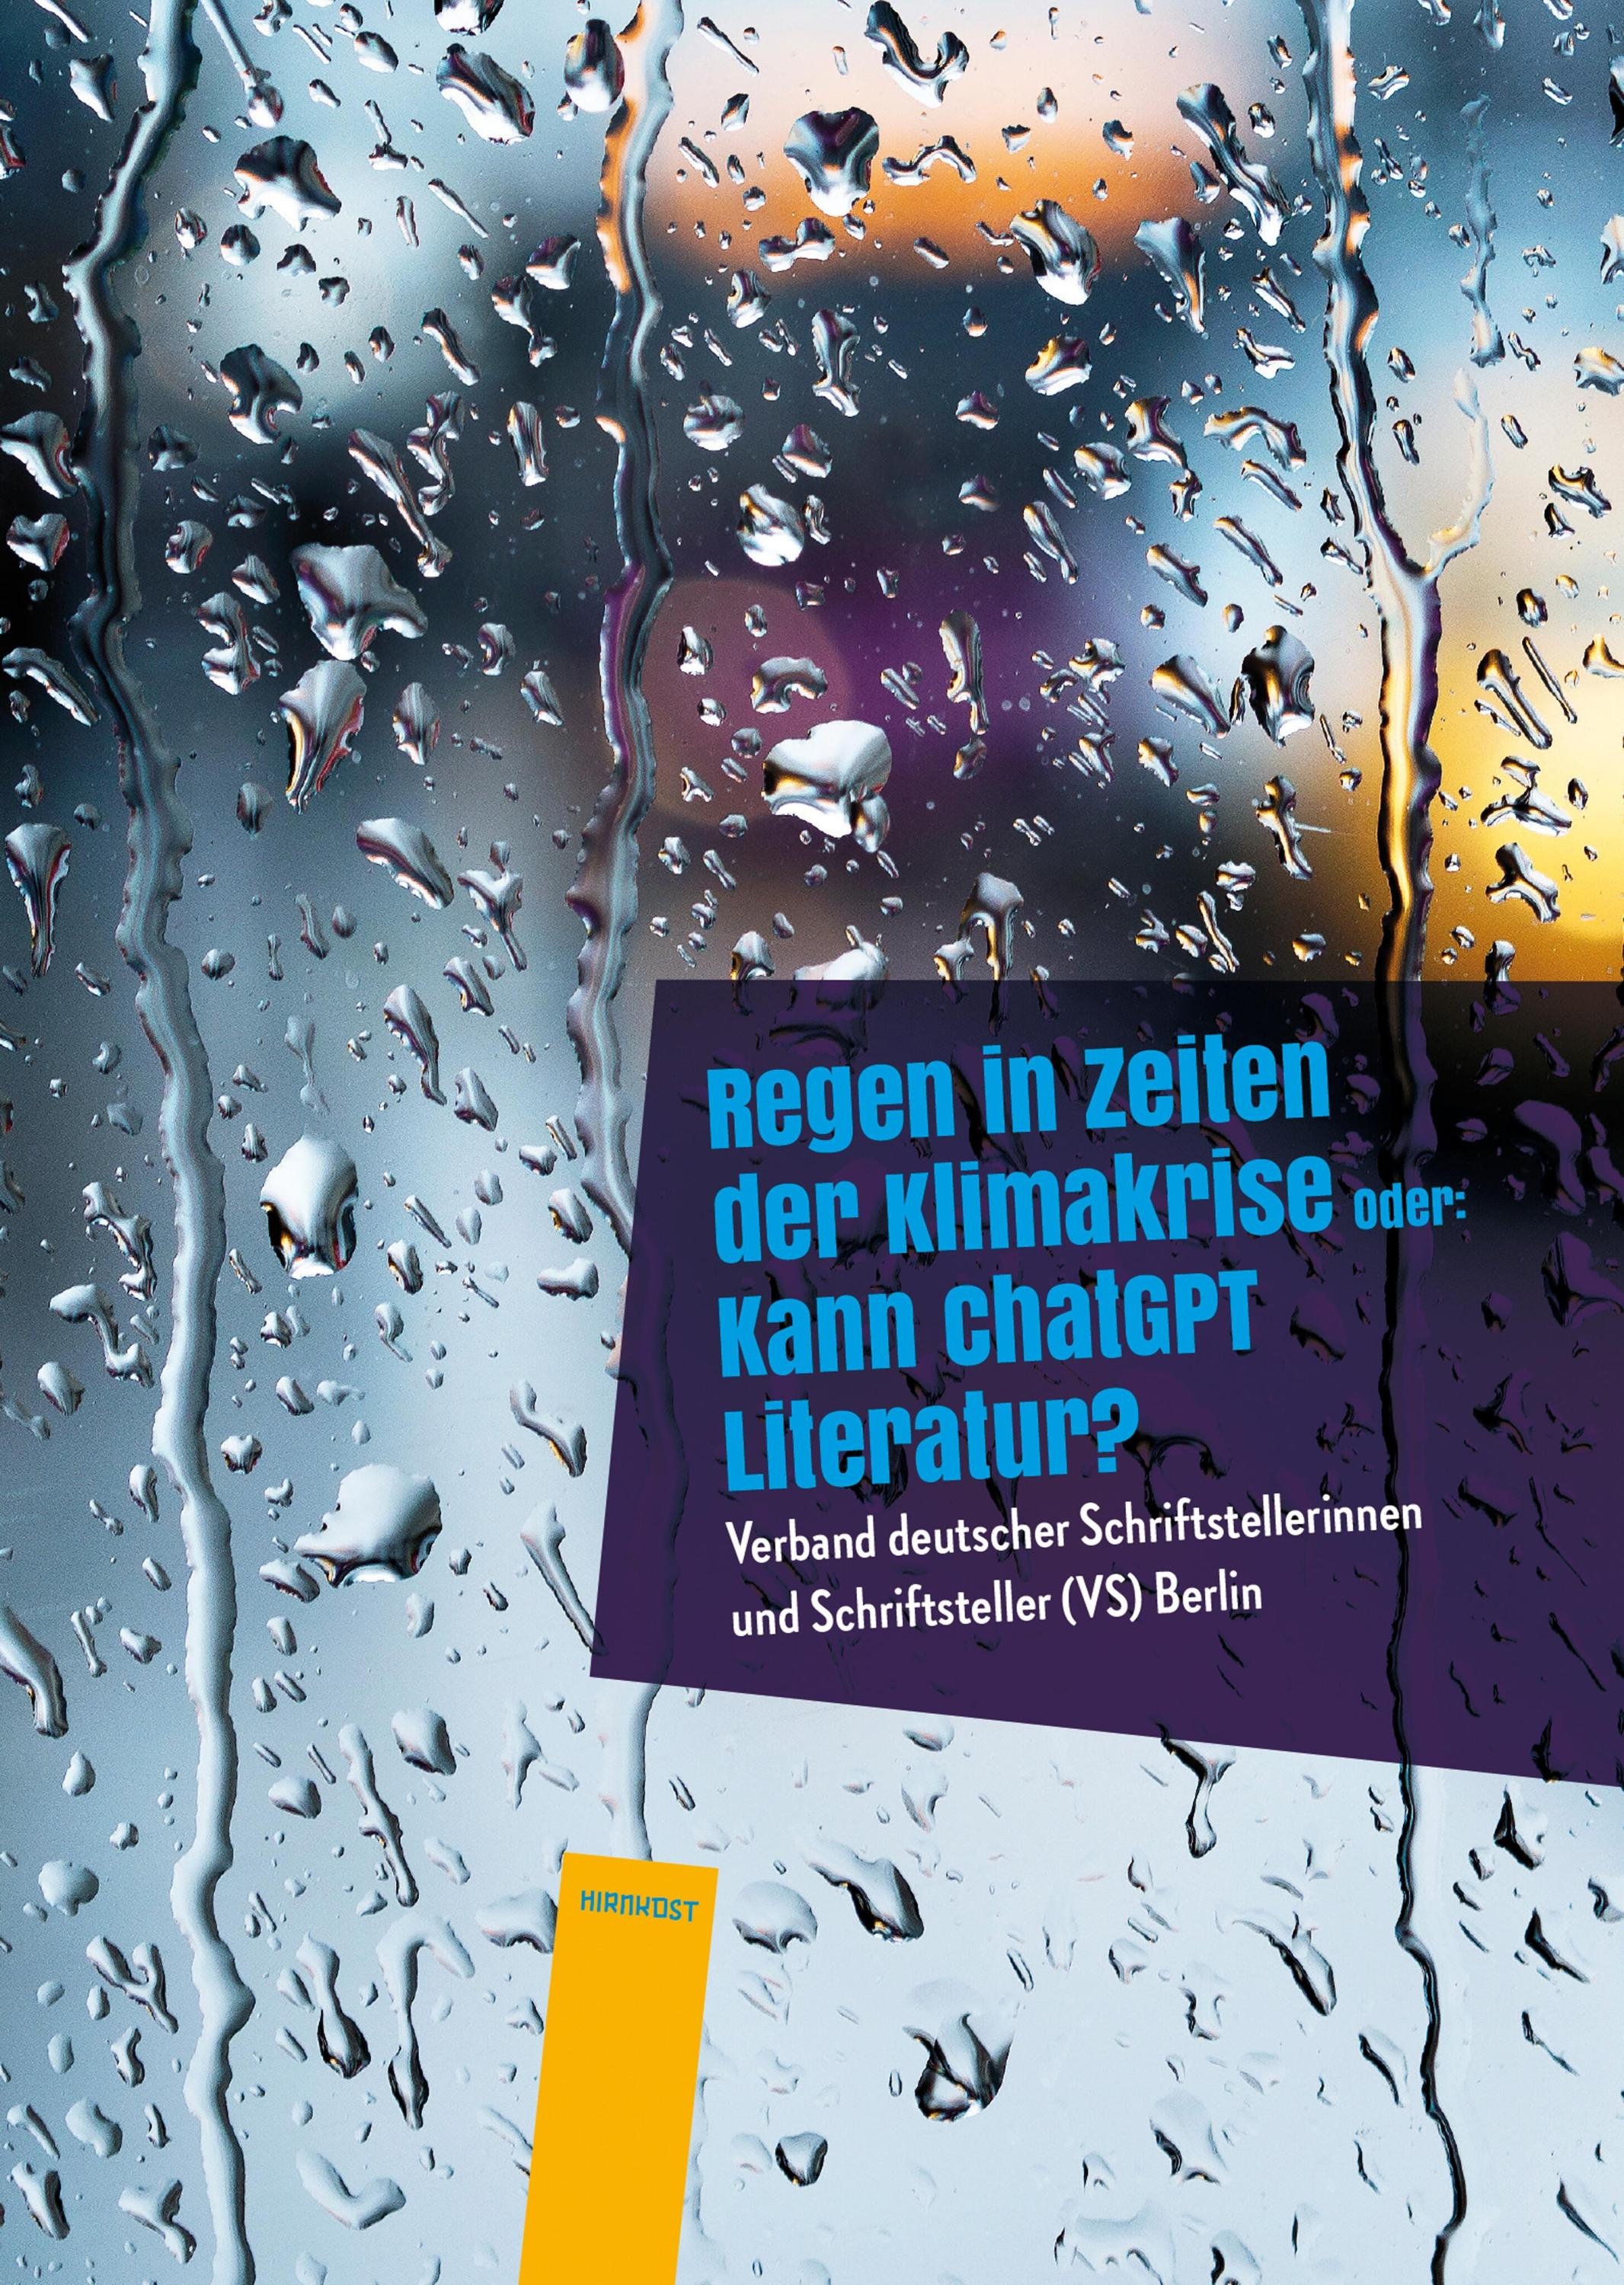 Regen In Zeiten Der Klimakrise - (VS) Berlin Verband deutscher Schriftstellerinnen und Schriftsteller  Gebunden